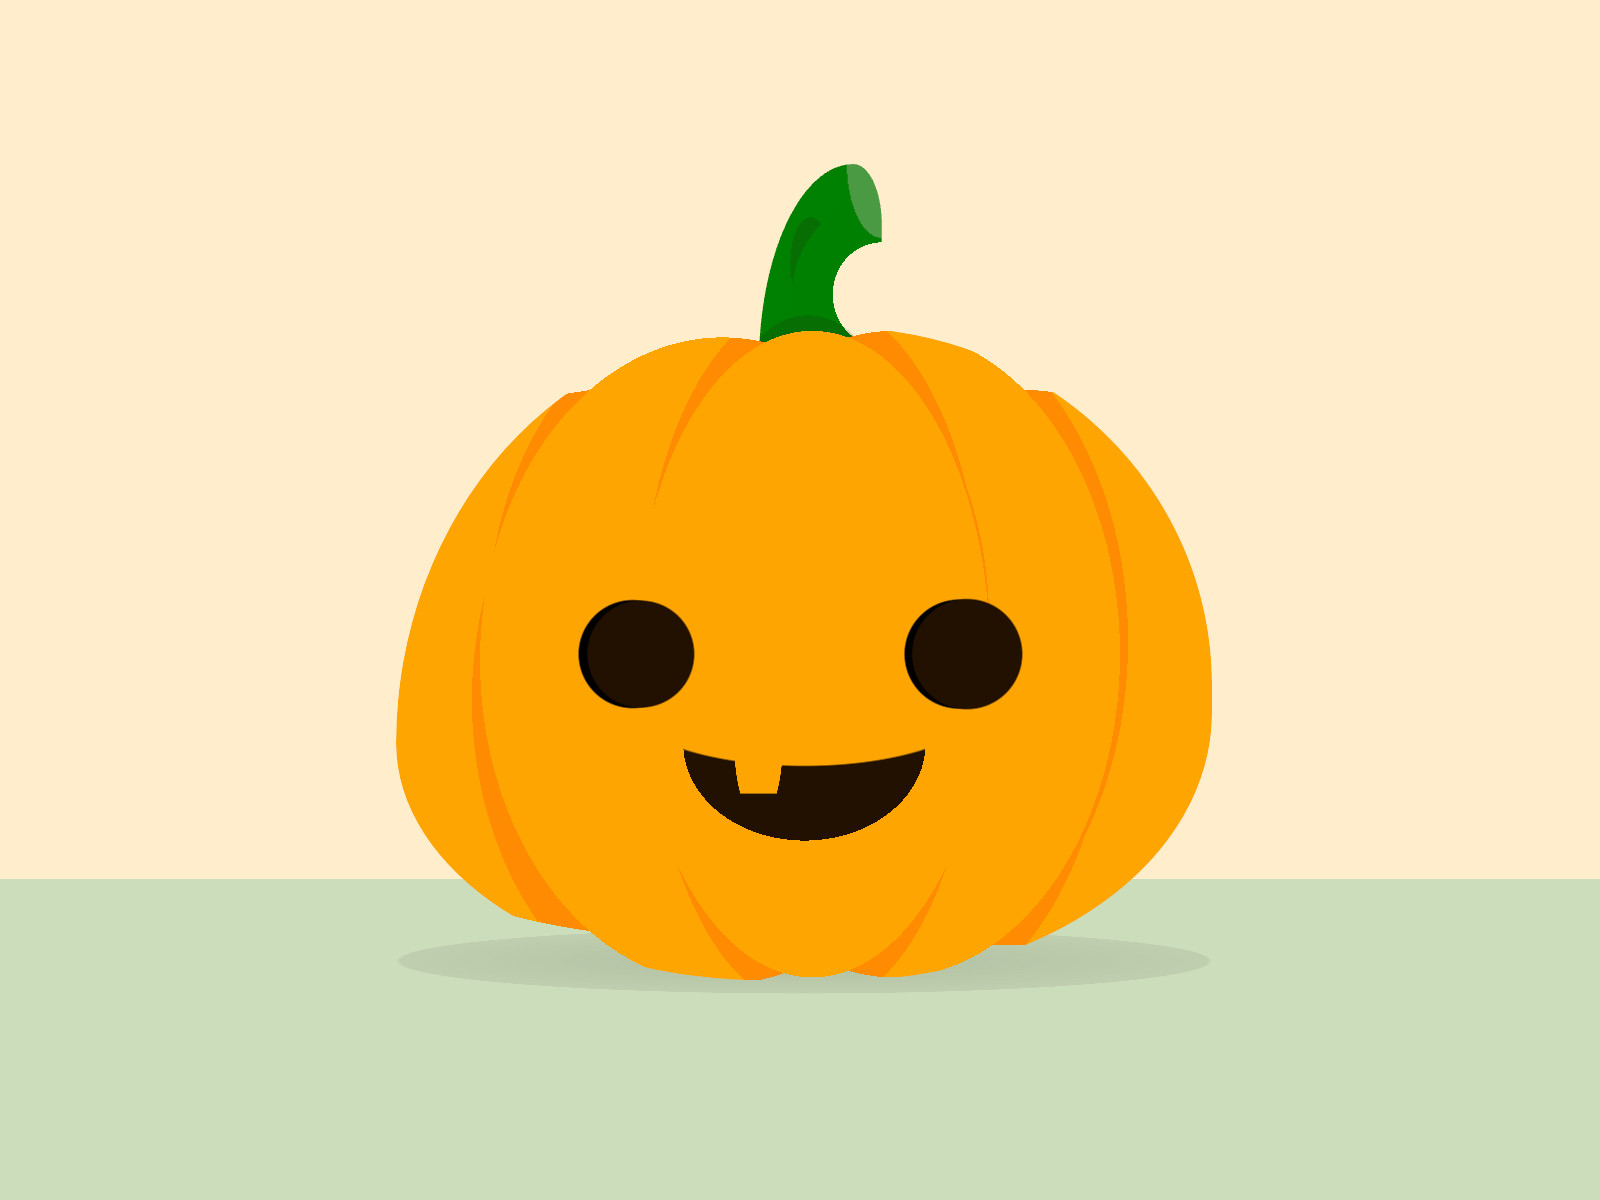 Cartoon of a carved pumpkin